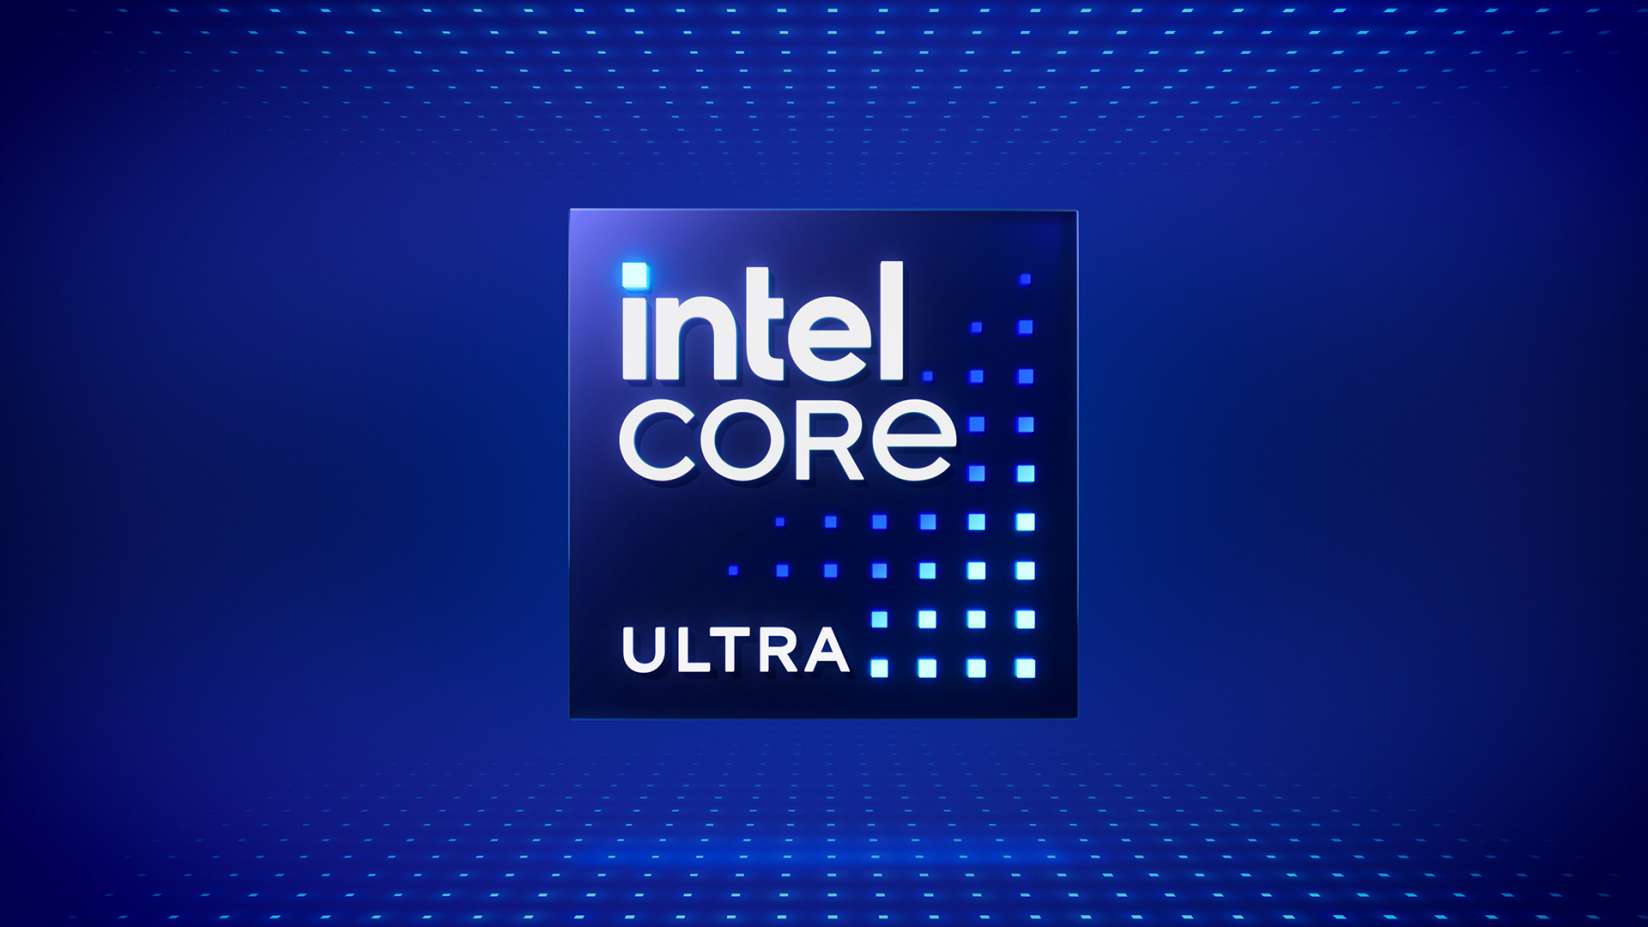 Intel prévoit de vendre 100 millions de PC Core Ultra d'ici 2025 grâce à l'IA